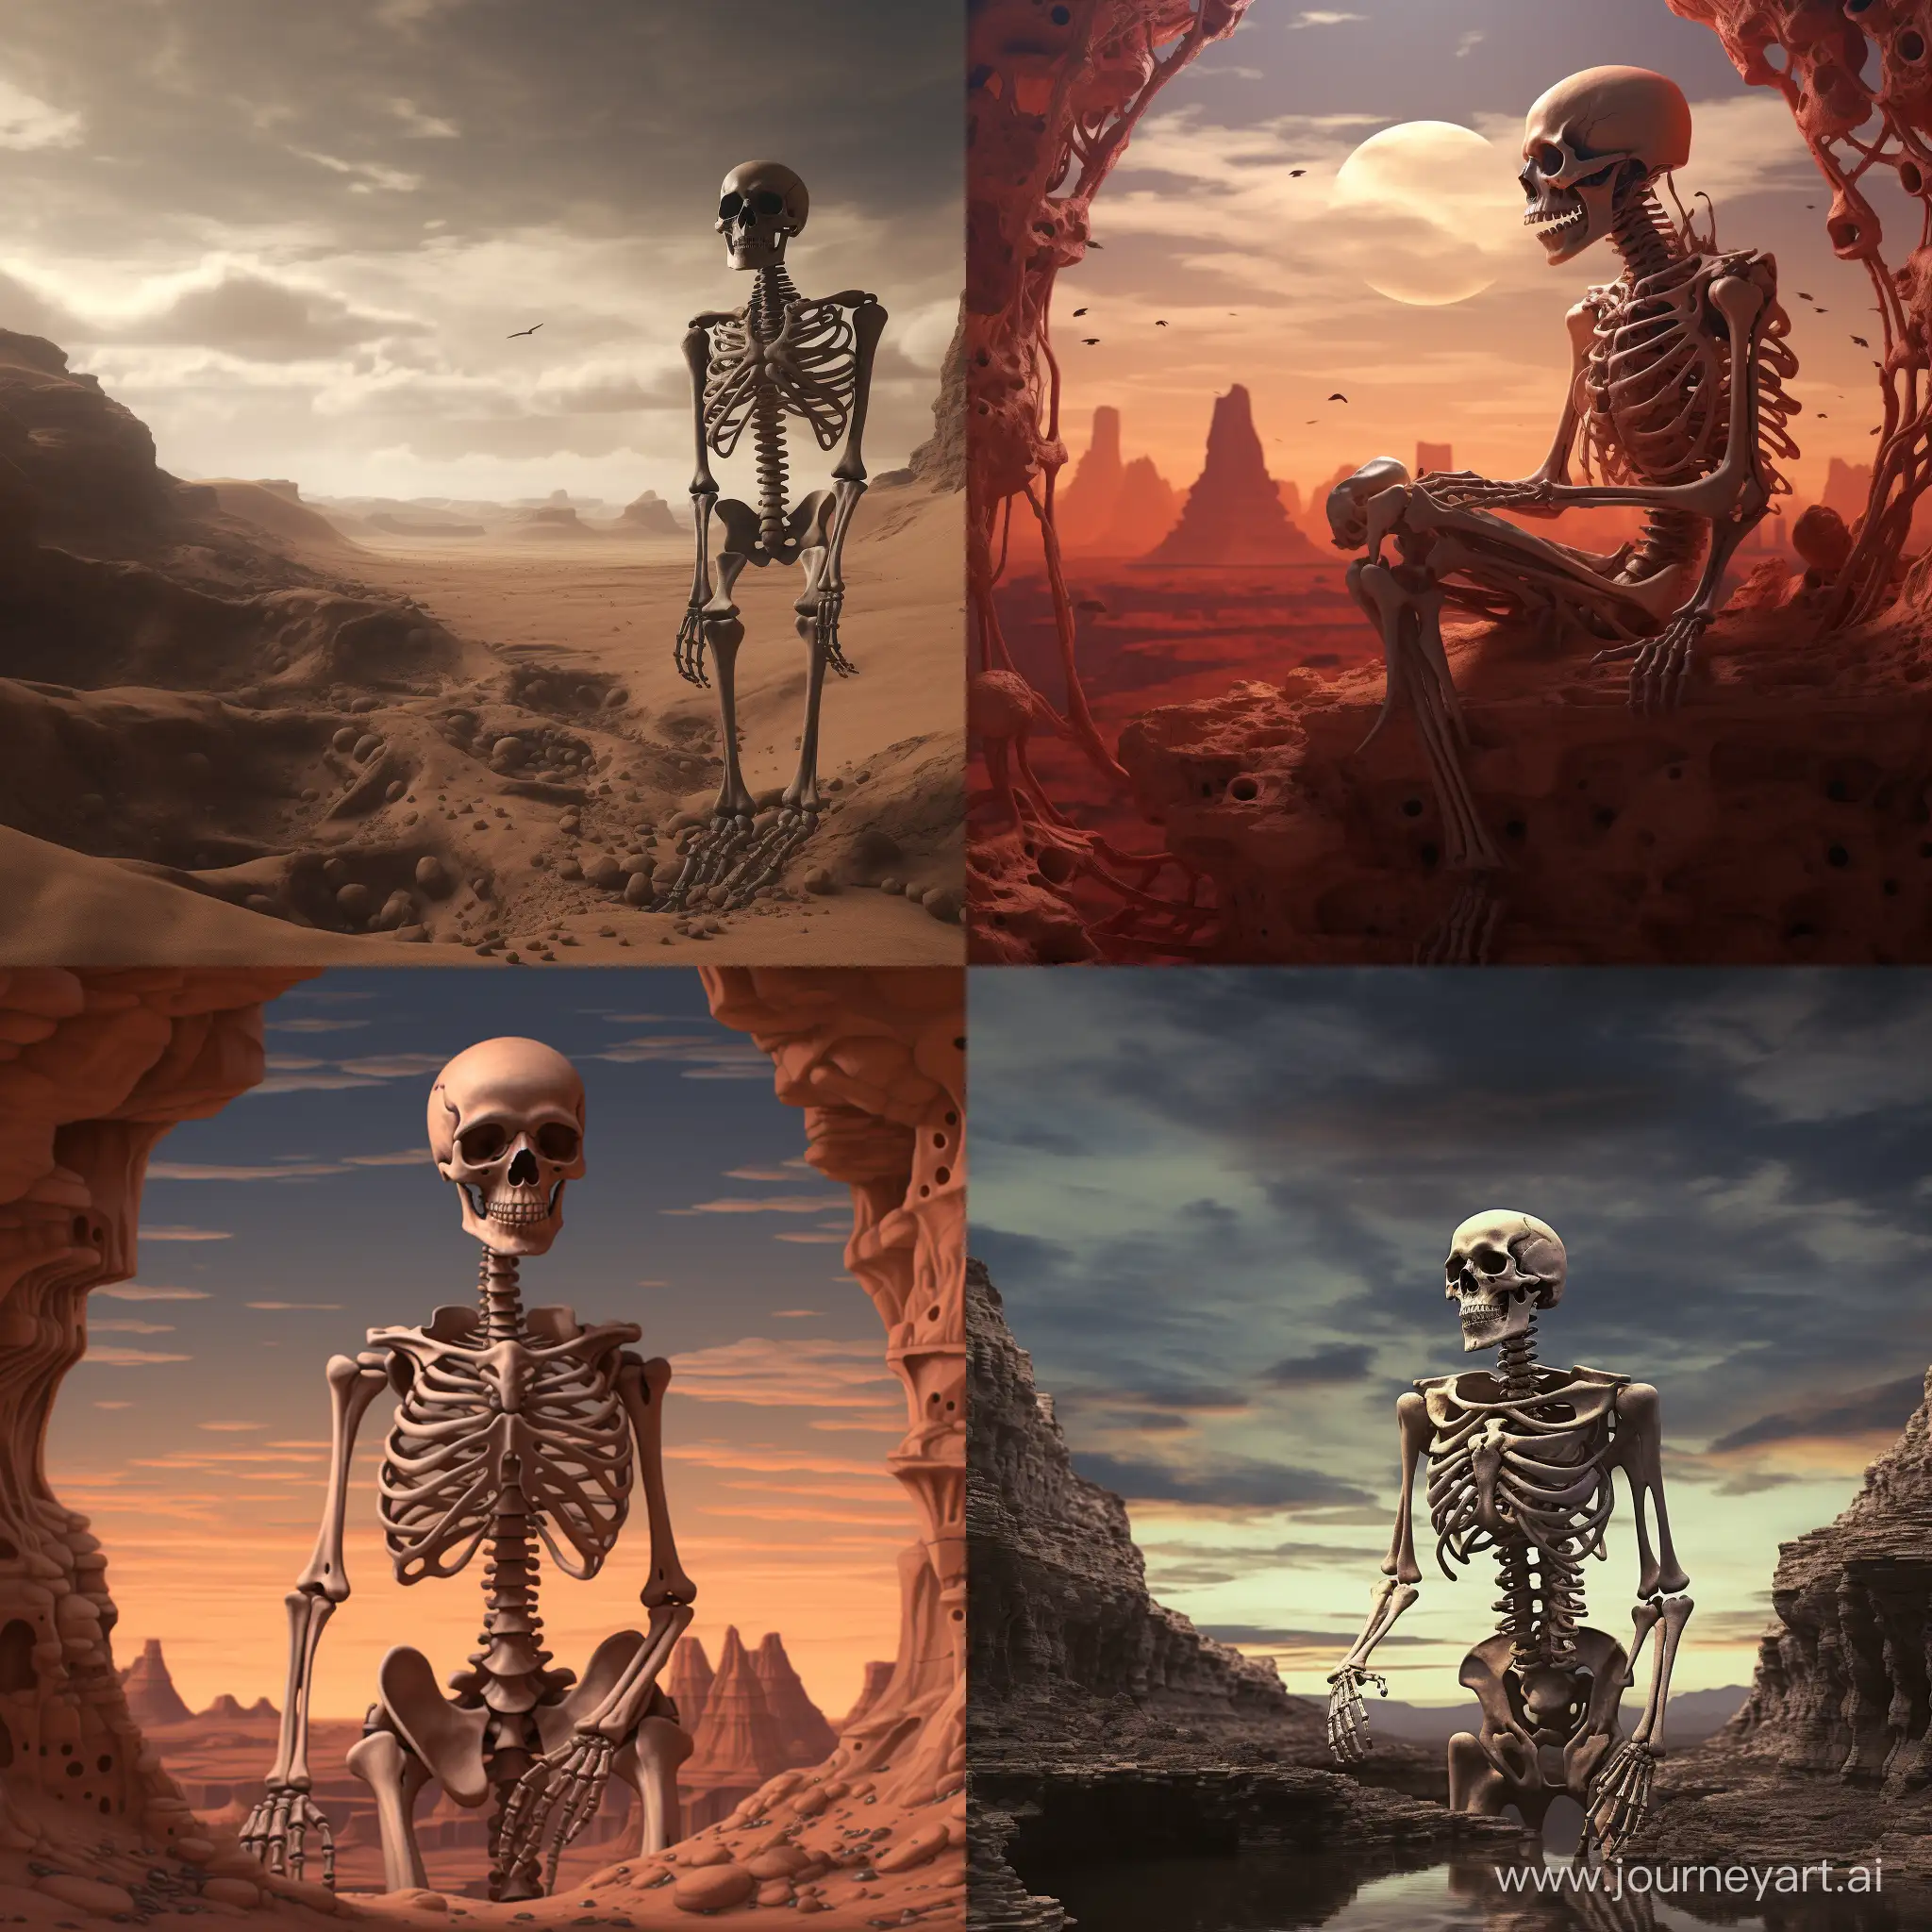 анатомическое изображение человеческого скелета на мрачной неизвестной планете